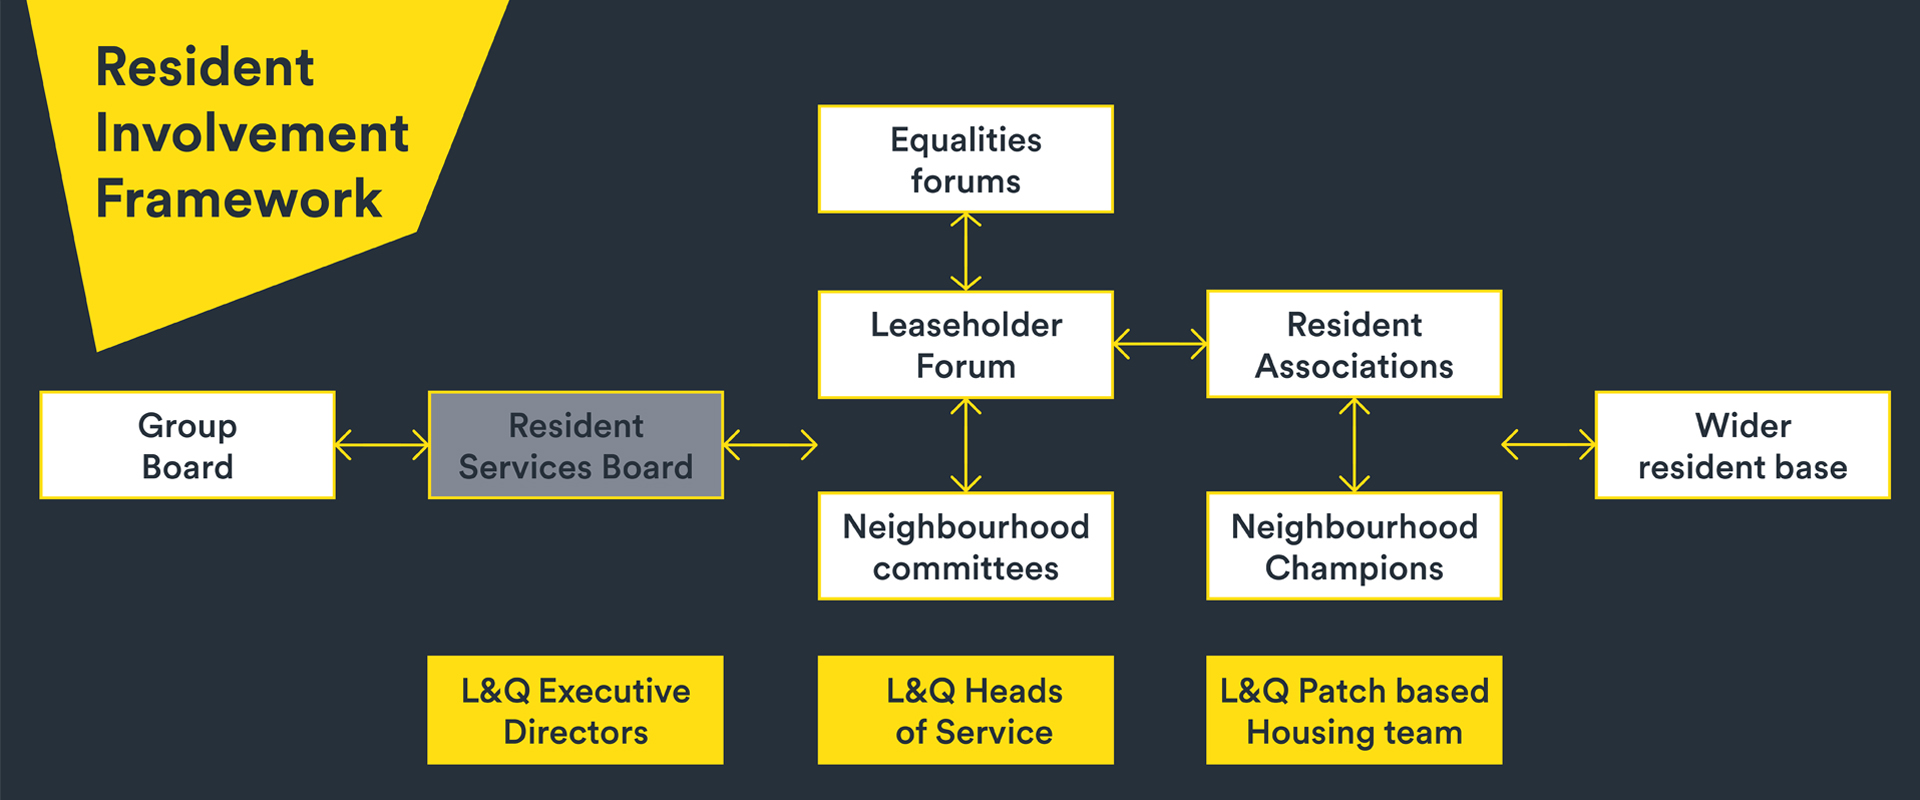 Resident involvement framework